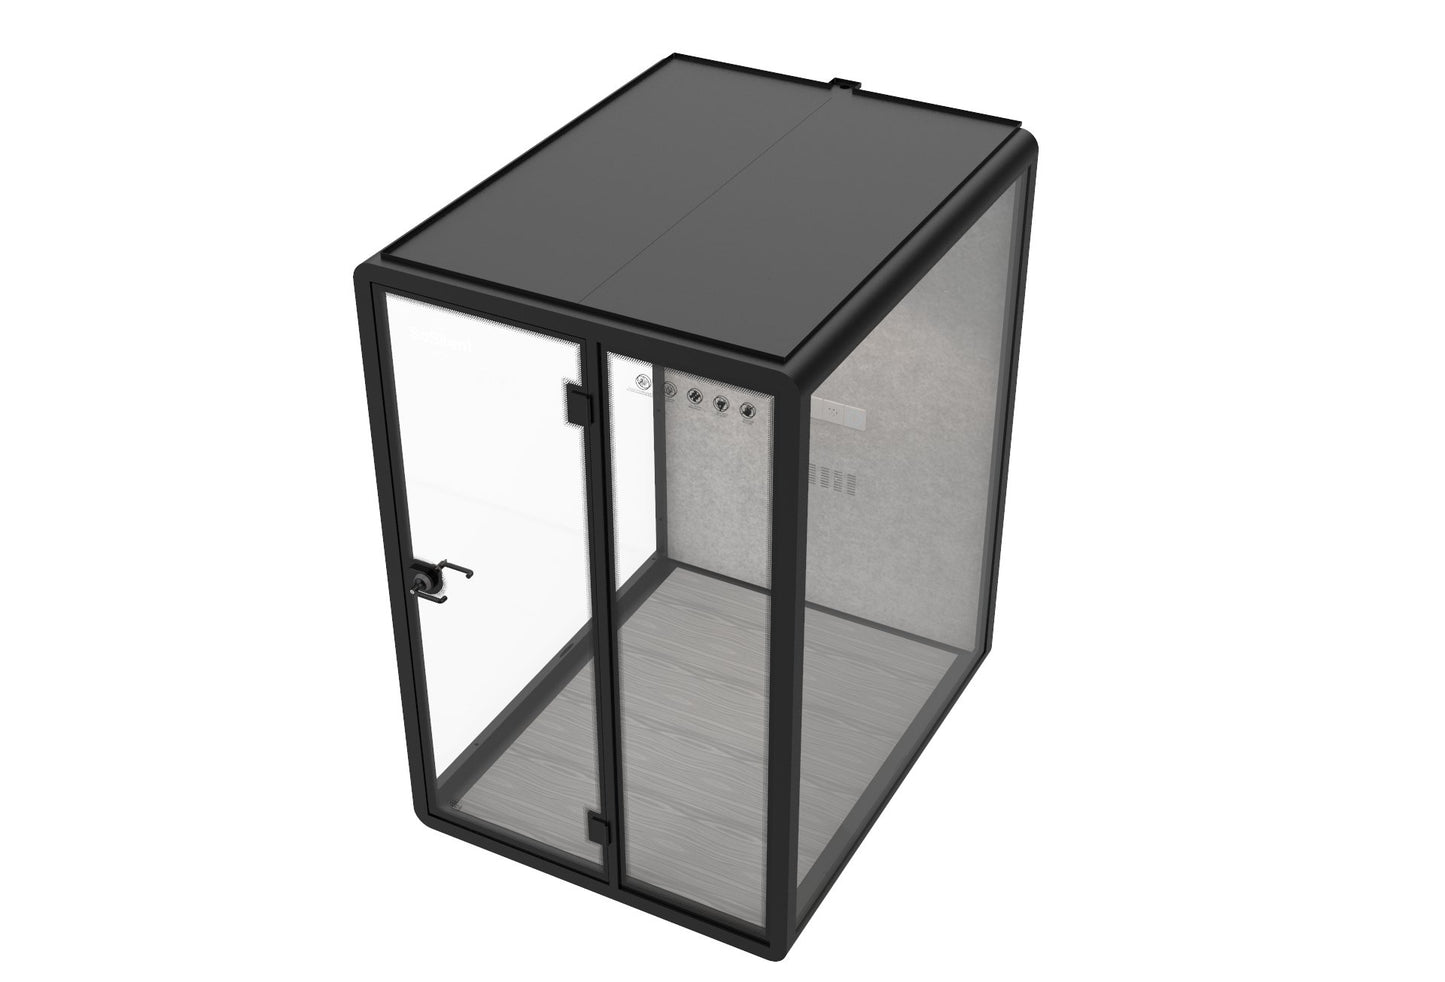 Outdoor Meetingbox OM2 - wetterfeste schallisolierte Kabine - SoSilent